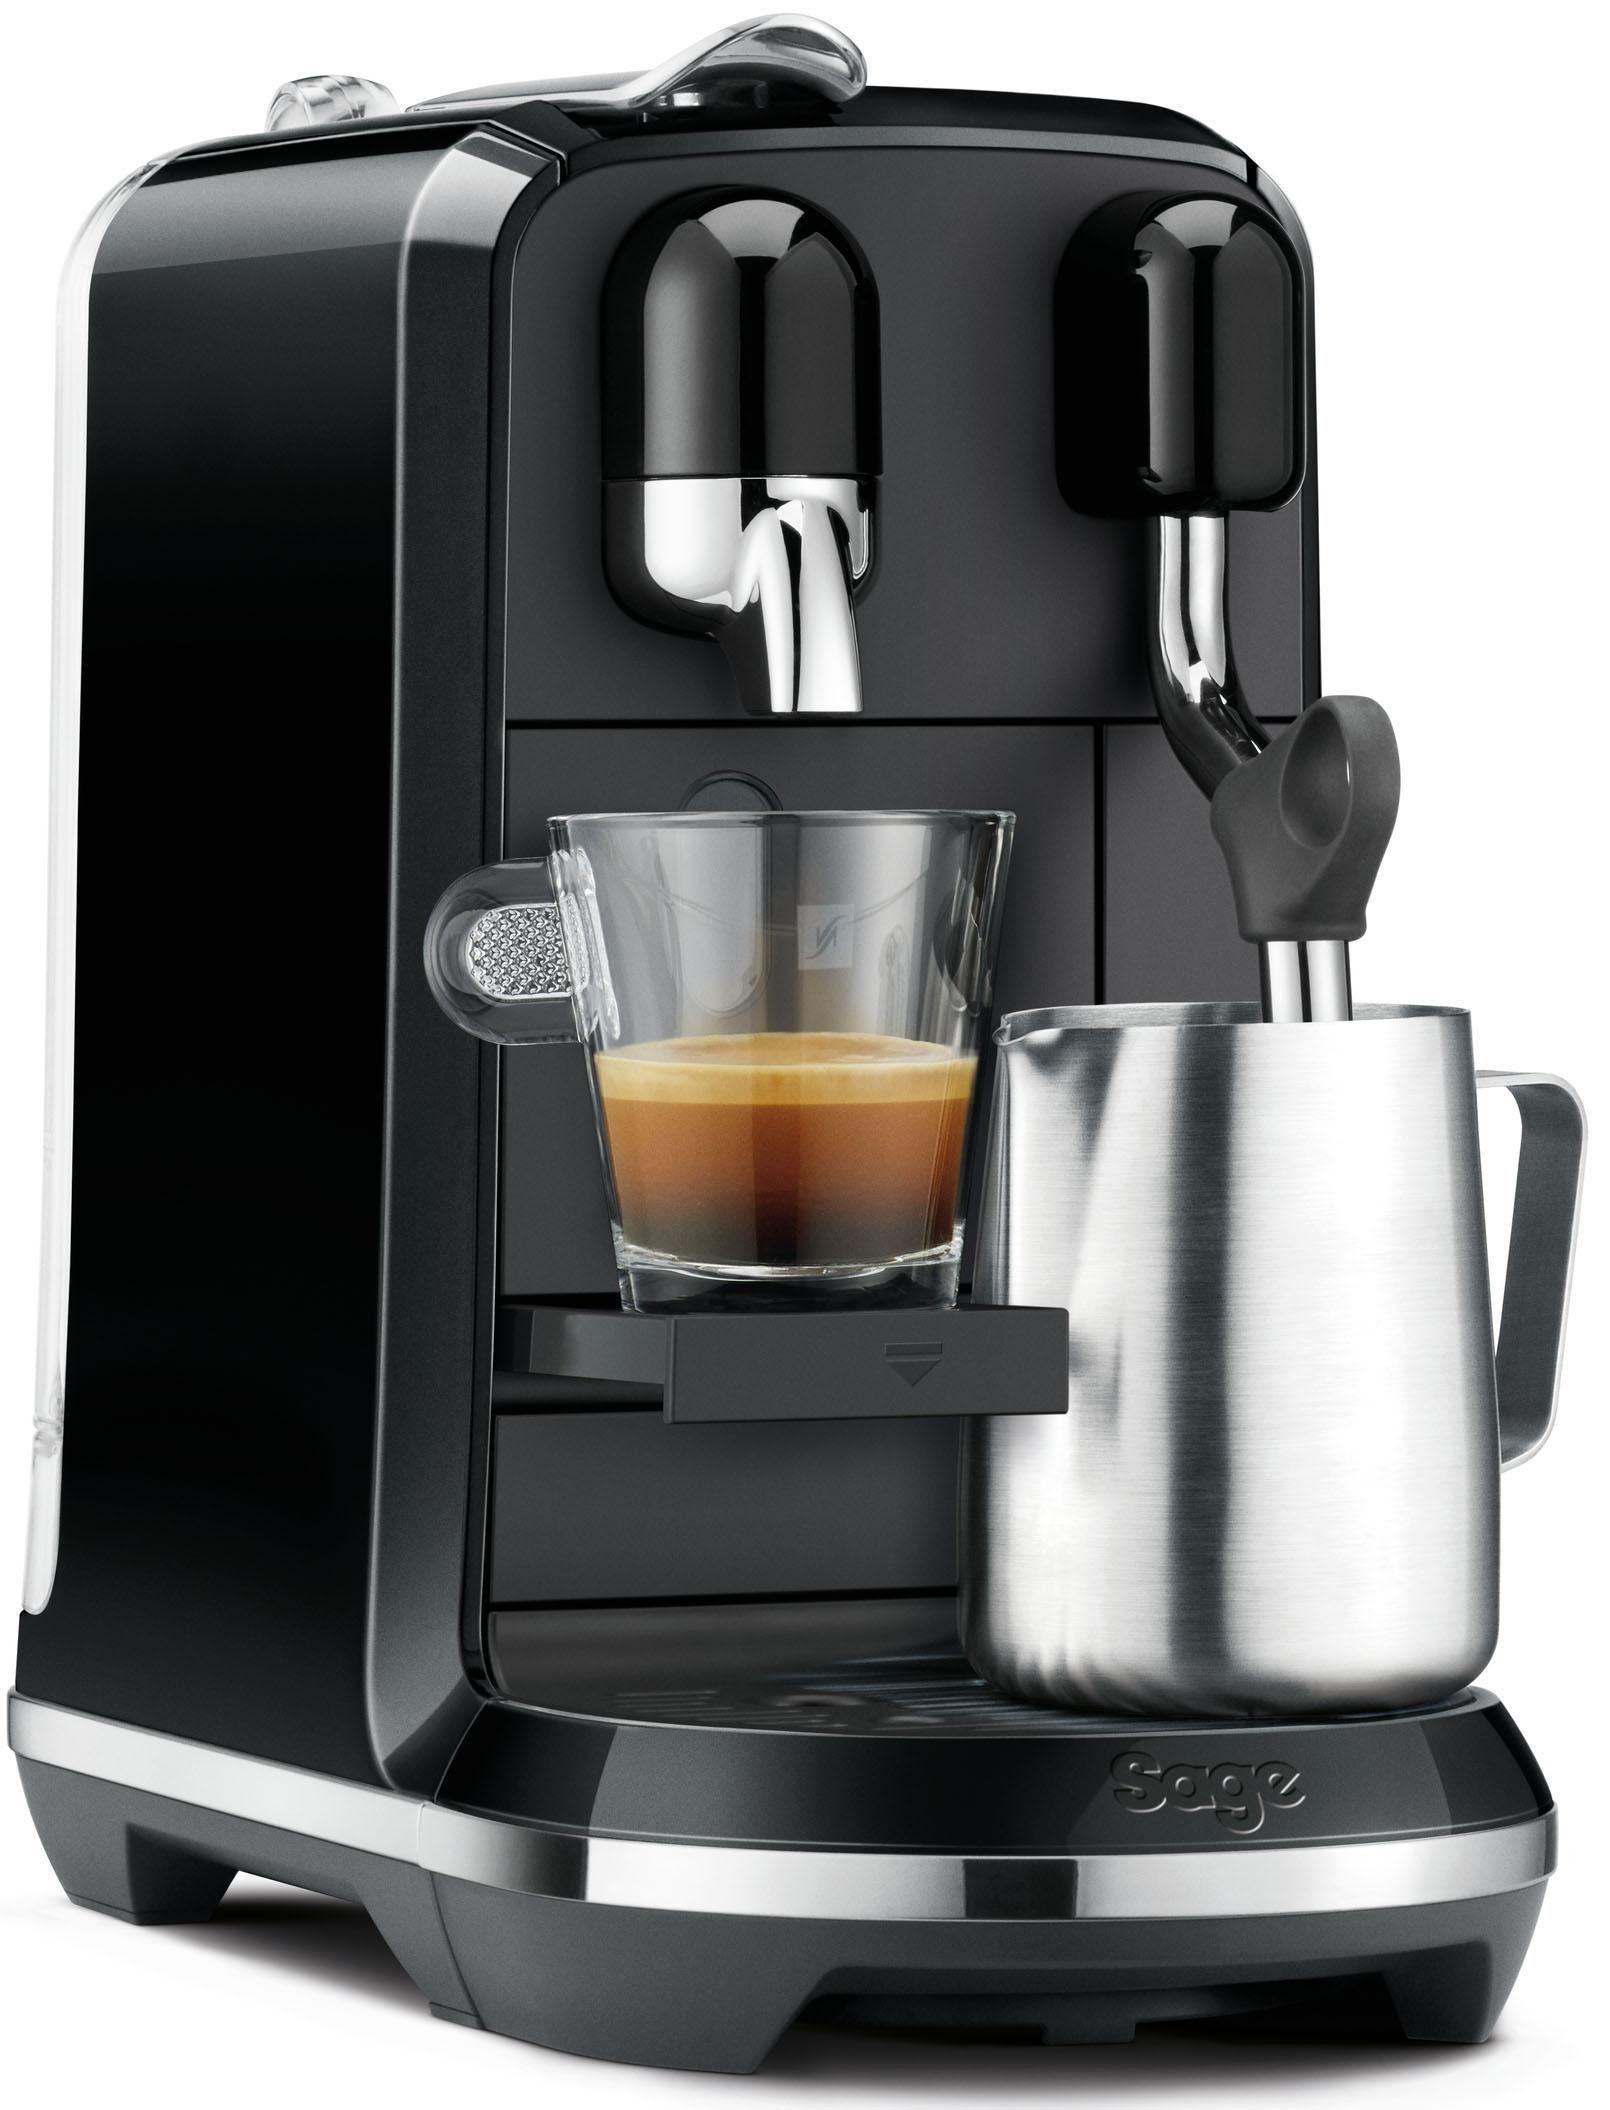 SNE500 Edelstahl-Milchkanne, Kapseln Creatista mit Nespresso mit inkl. Willkommenspaket Uno Kapselmaschine 14